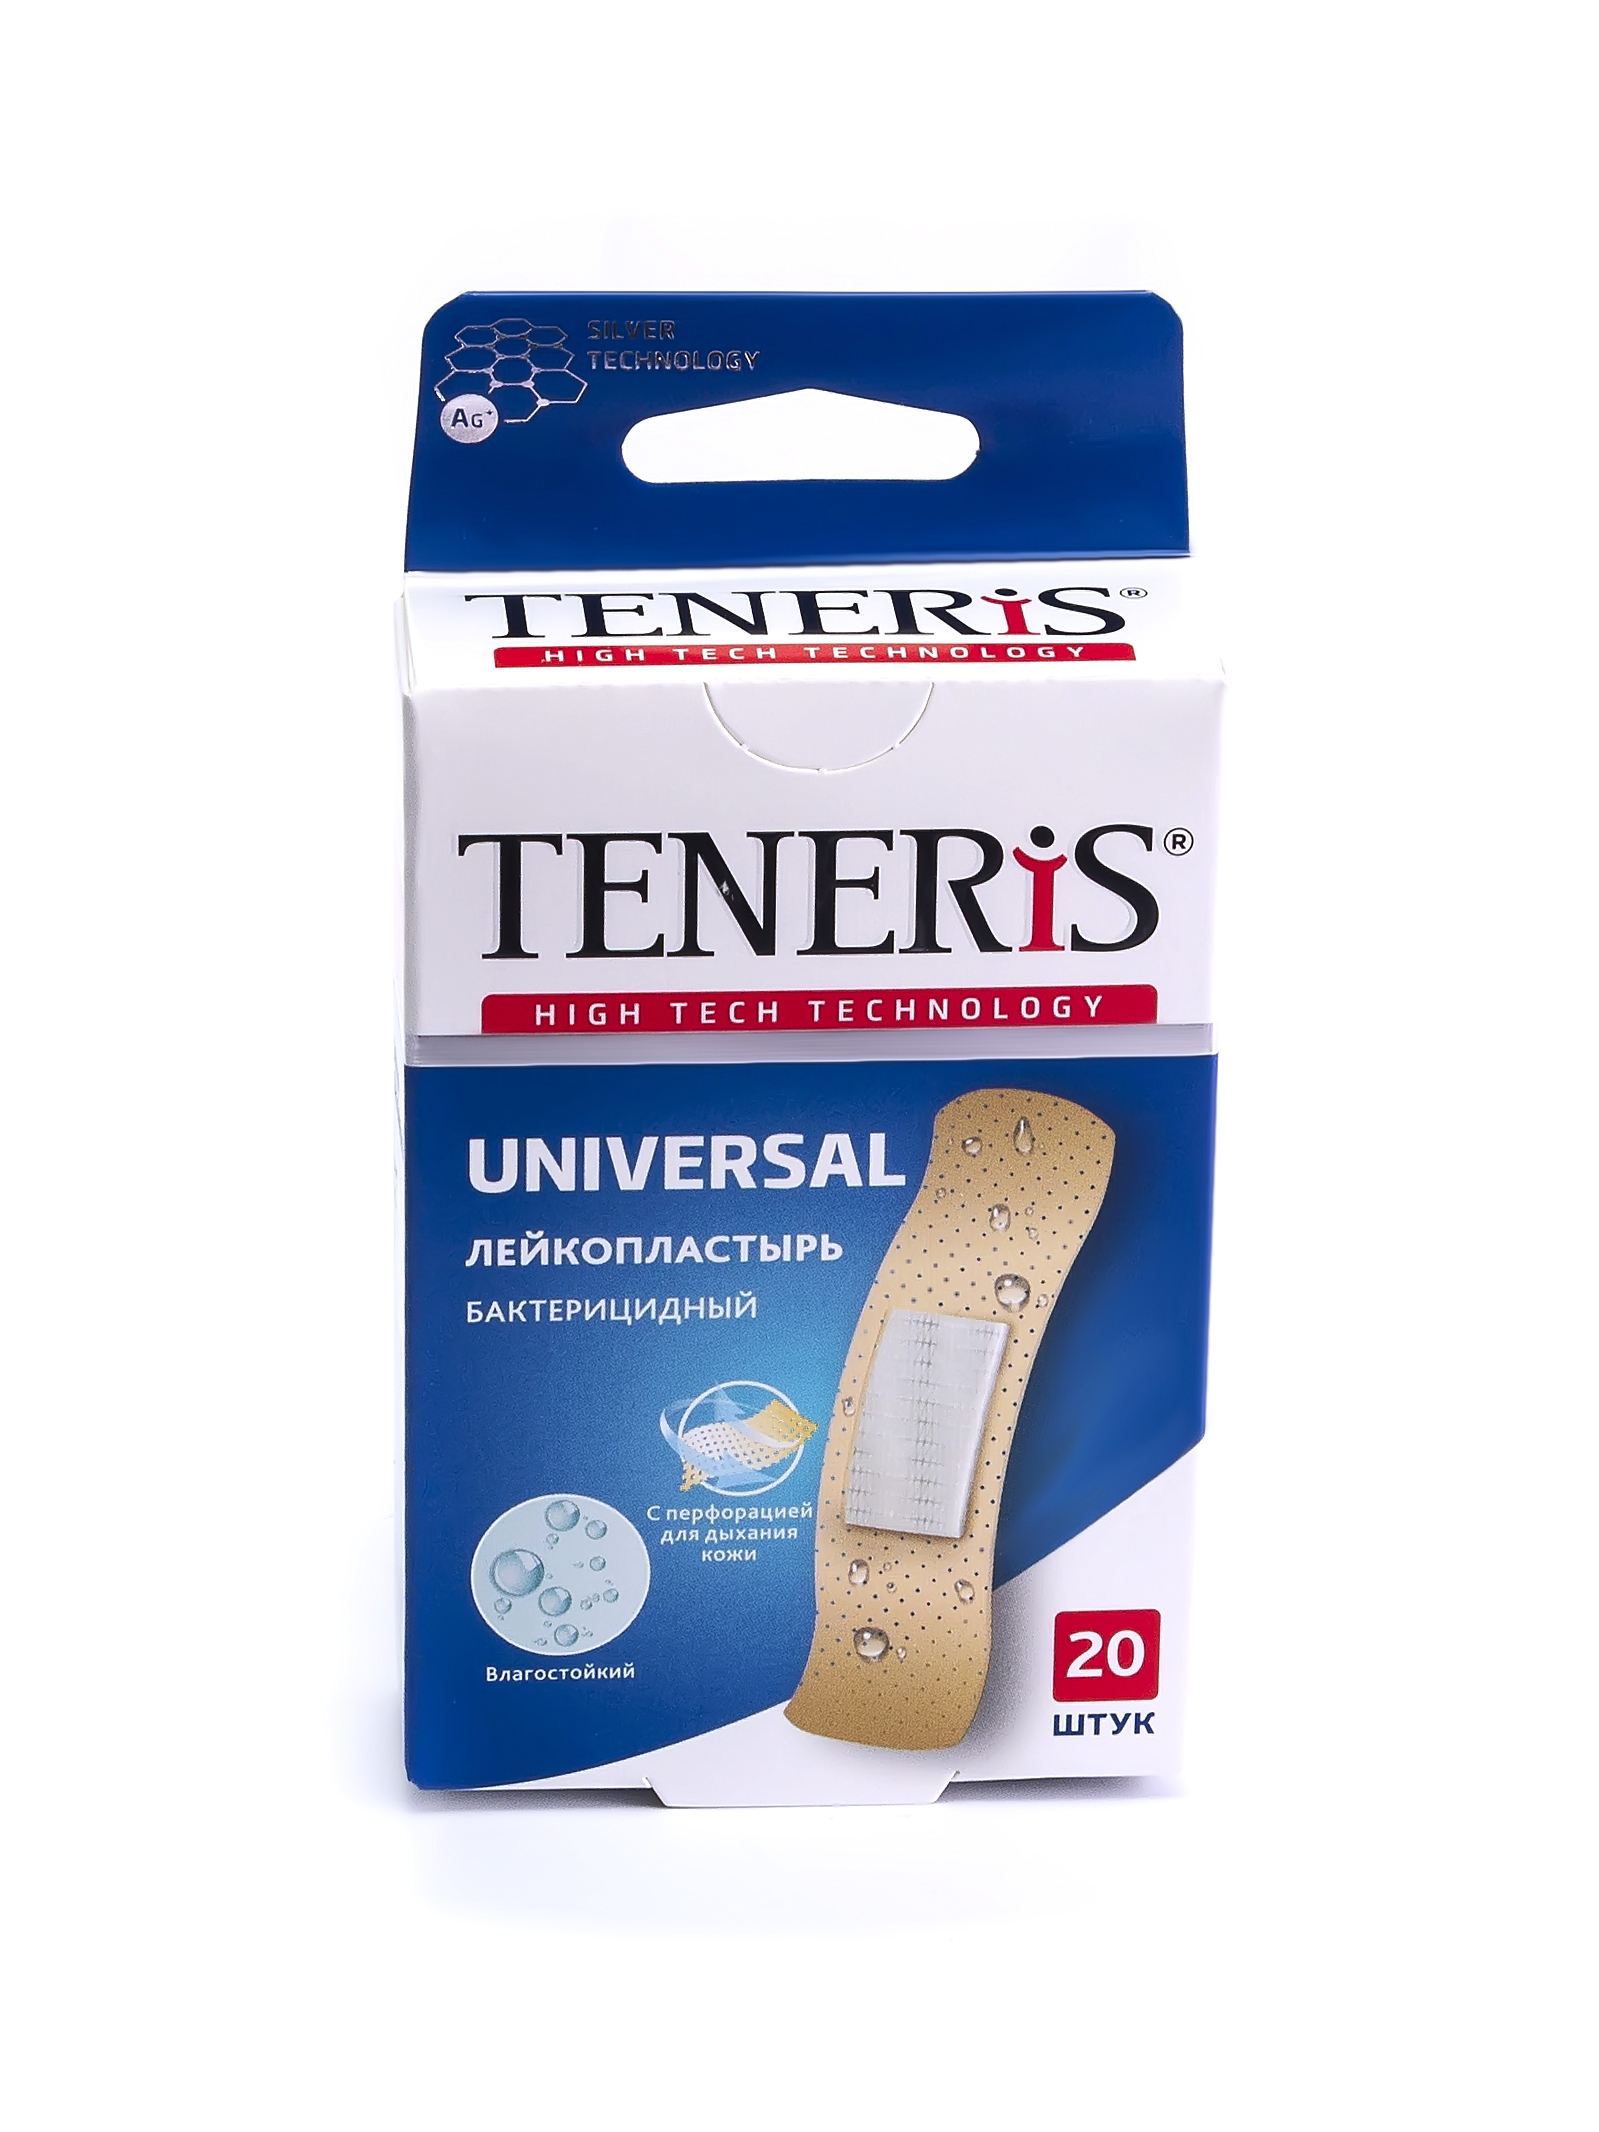 Купить Пластырь Teneris Universal бактерицидный на полимерной основе 20 шт.